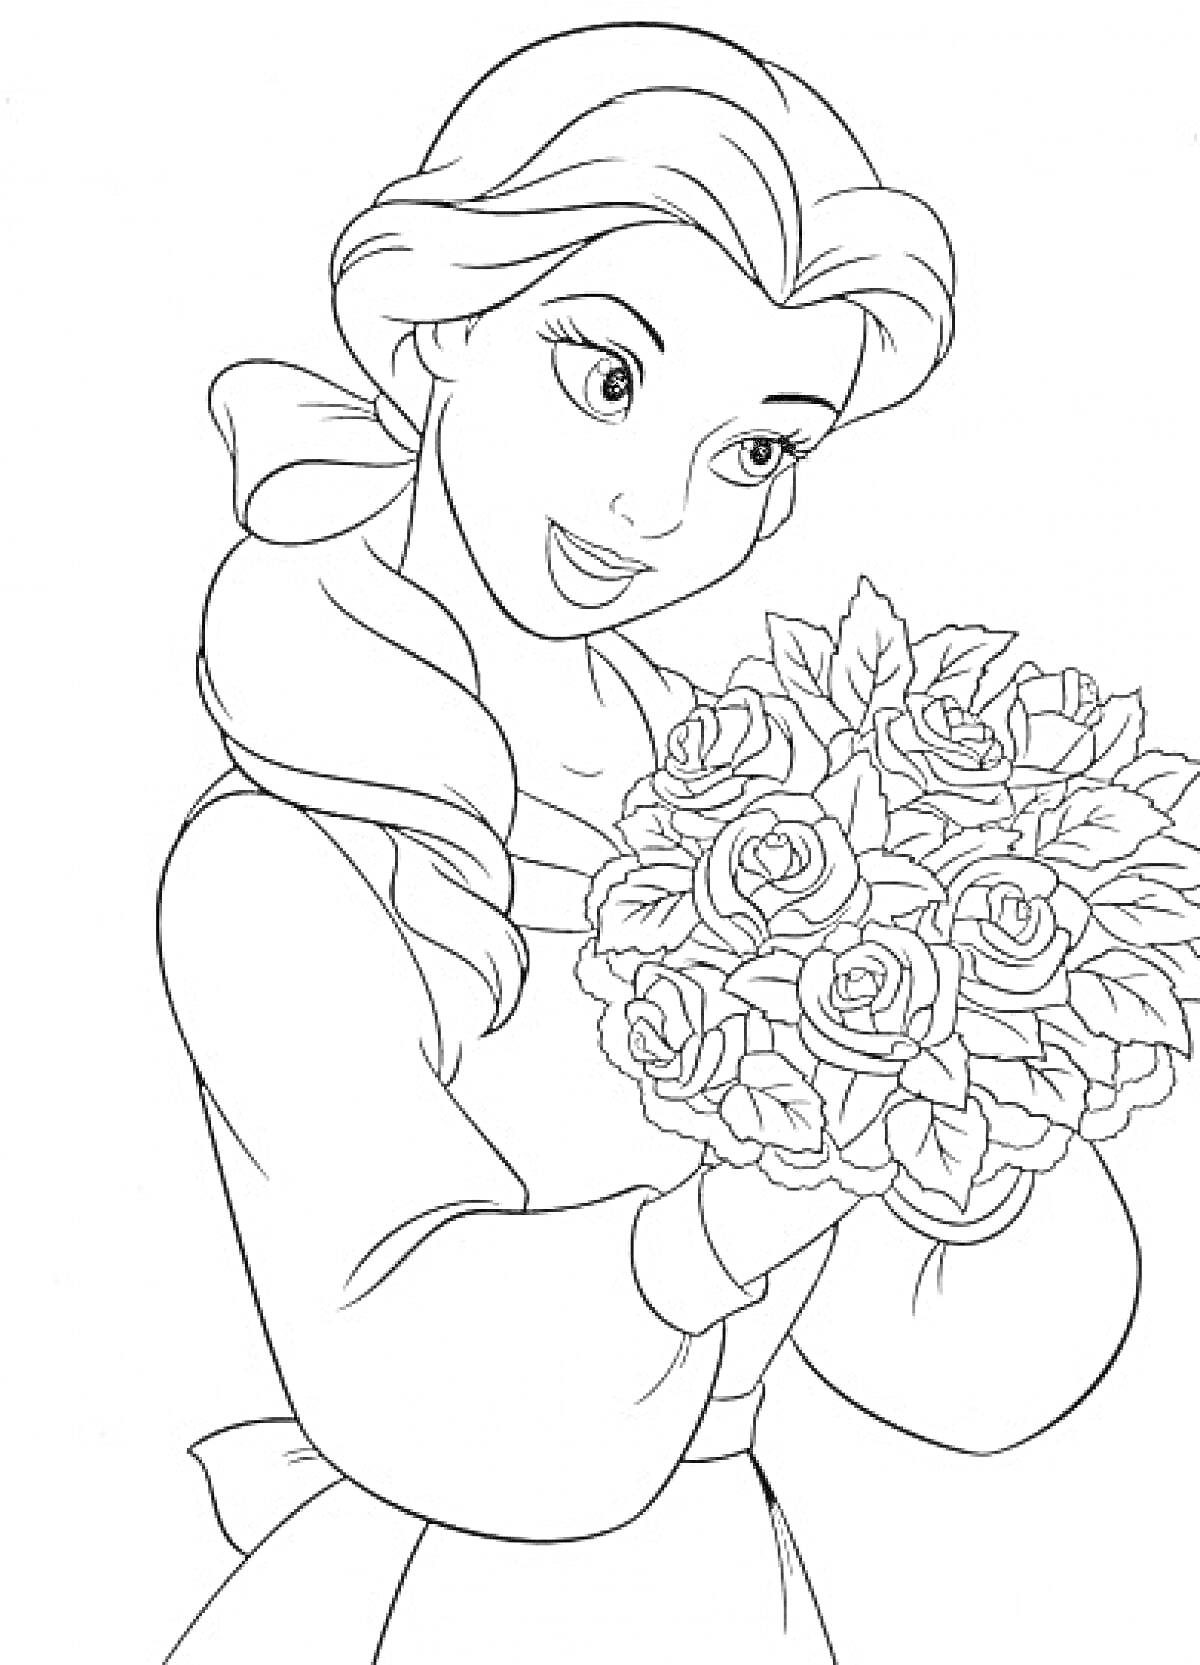 Раскраска Принцесса Бель с букетом роз